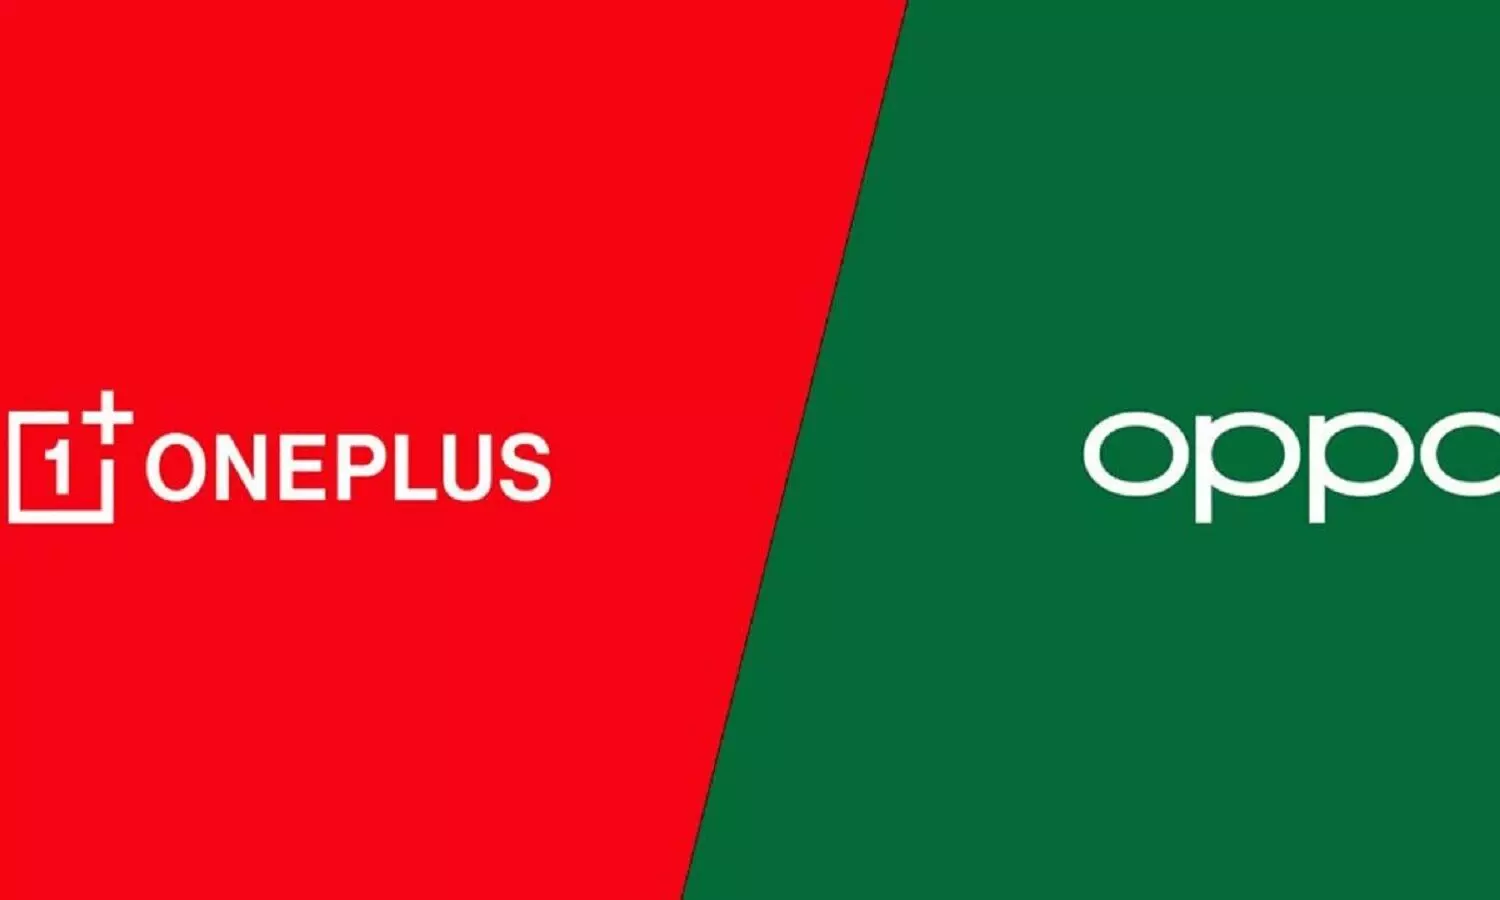 स्मार्टफोन ब्रांड कंपनी Oppo और Oneplus ने मर्जर का एलान कर दिया है।